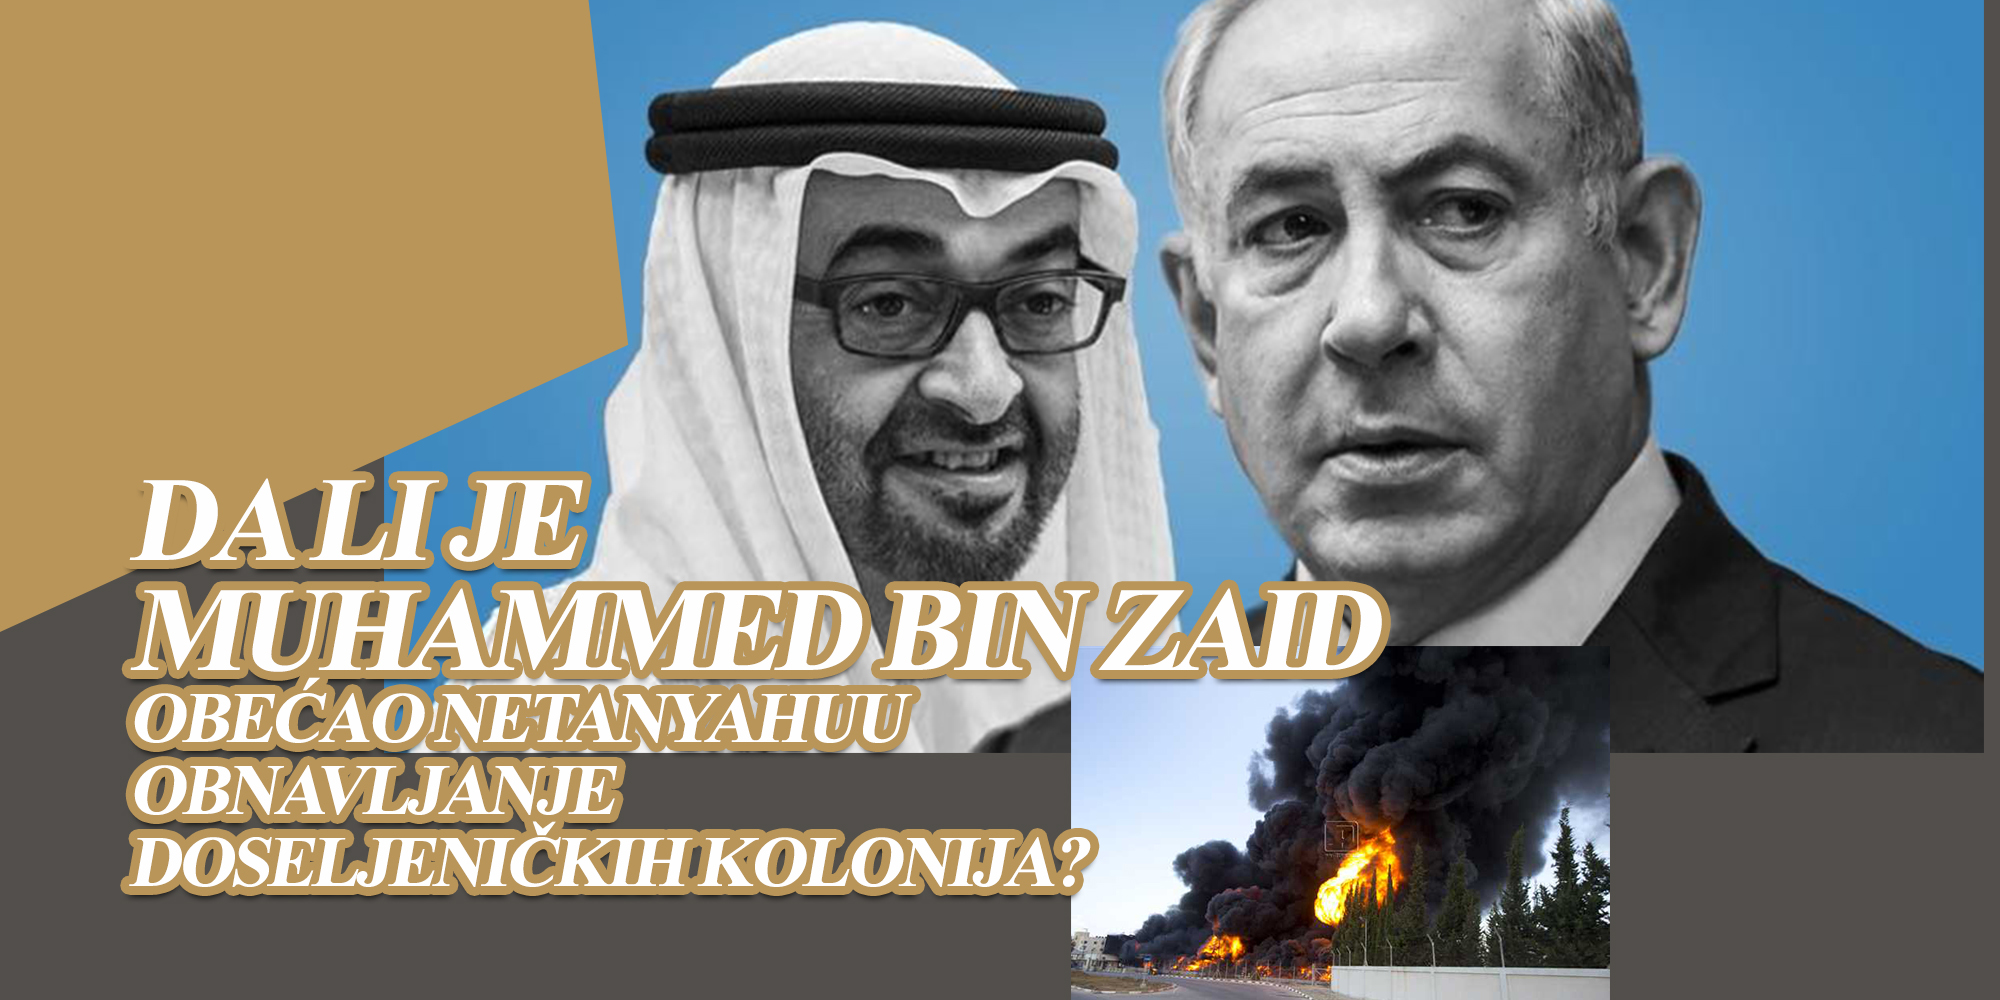 Da li je Muhammed bin Zaid obećao Netanyahuu obnavljanje doseljeničkih kolonija koje su pogađane raketama iz Gazze?